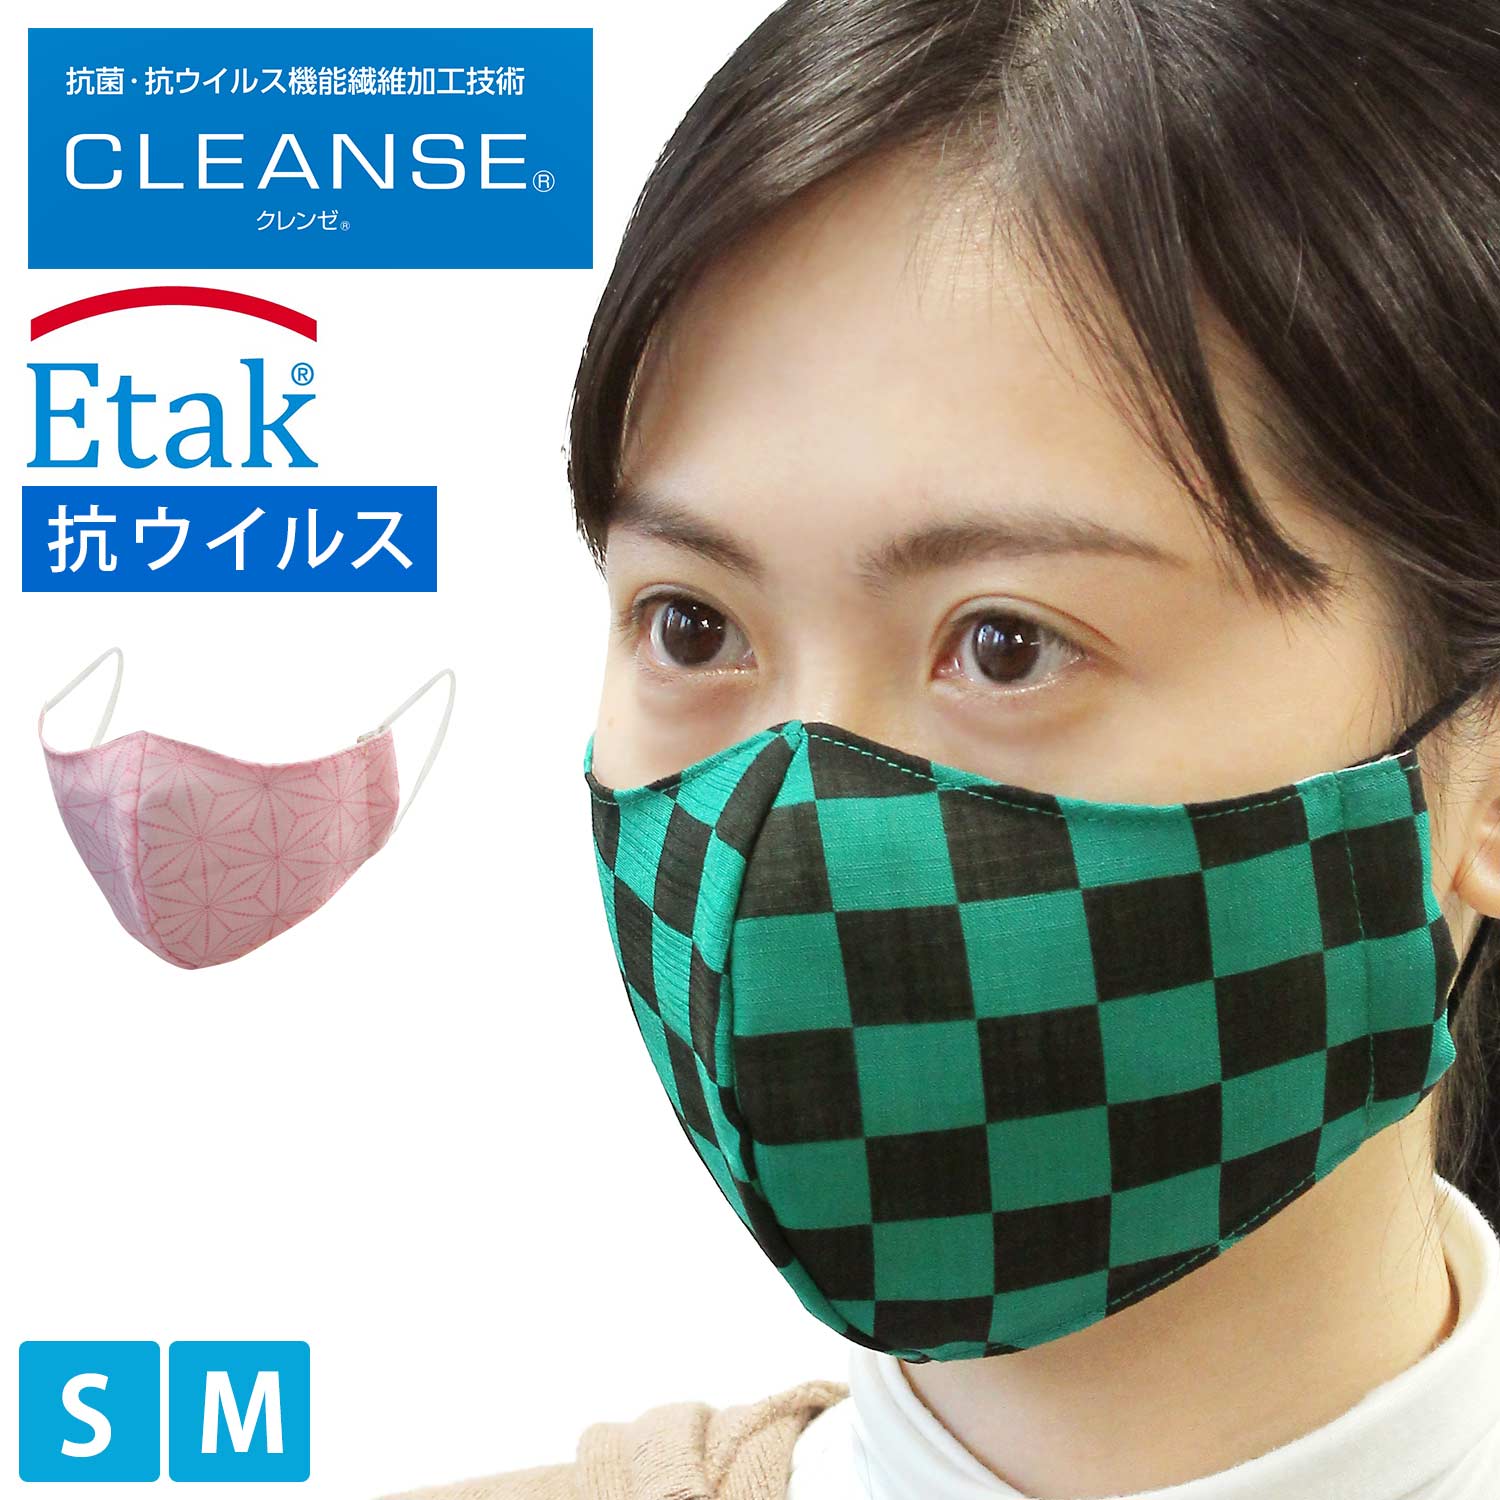 マスク 和柄のマスク クレンゼ 抗菌 抗ウイルス Etak 